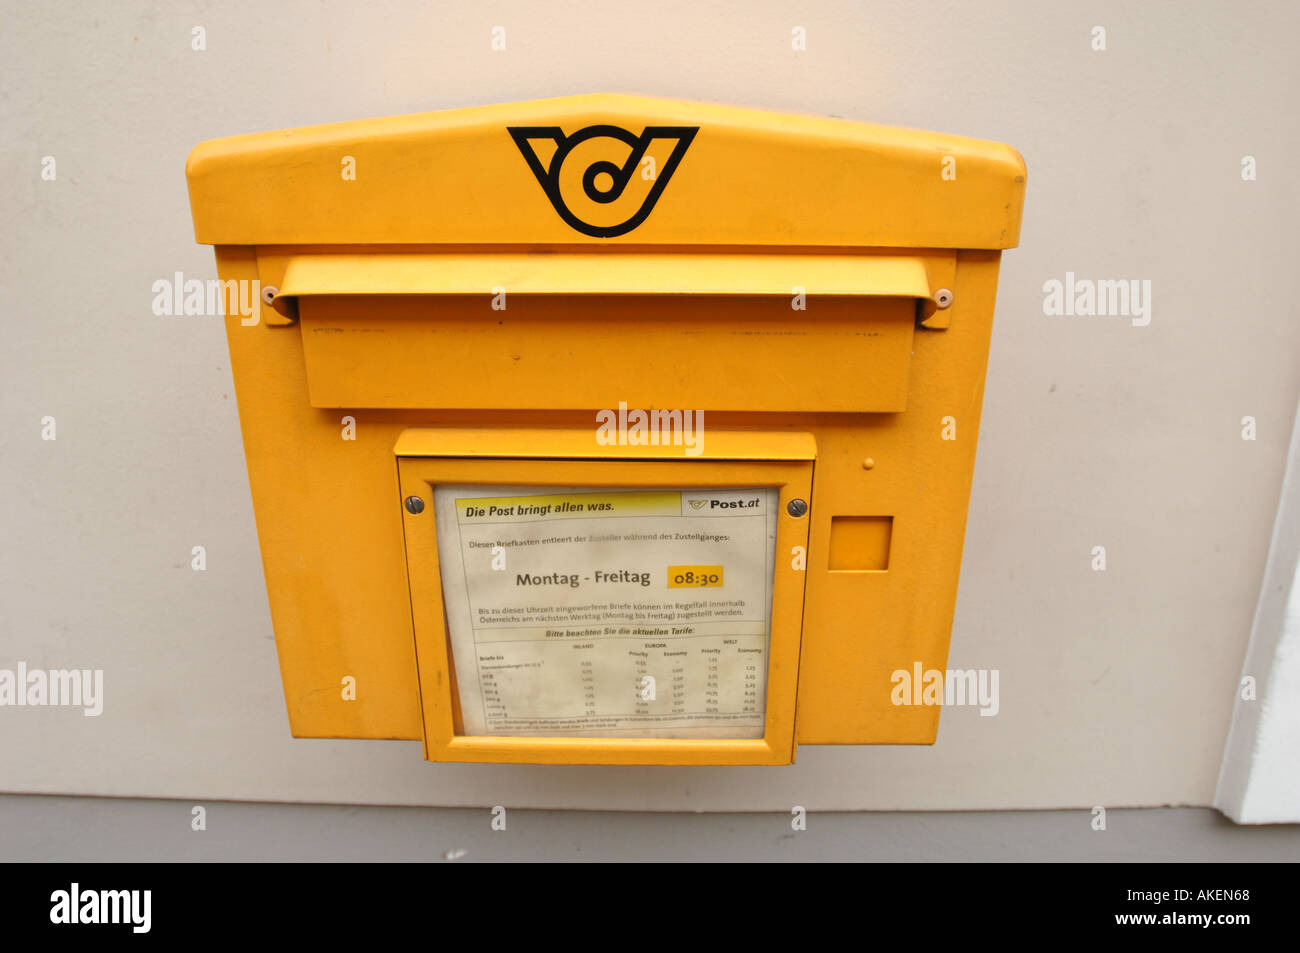 Briefkasten in Österreich Stockfotografie - Alamy